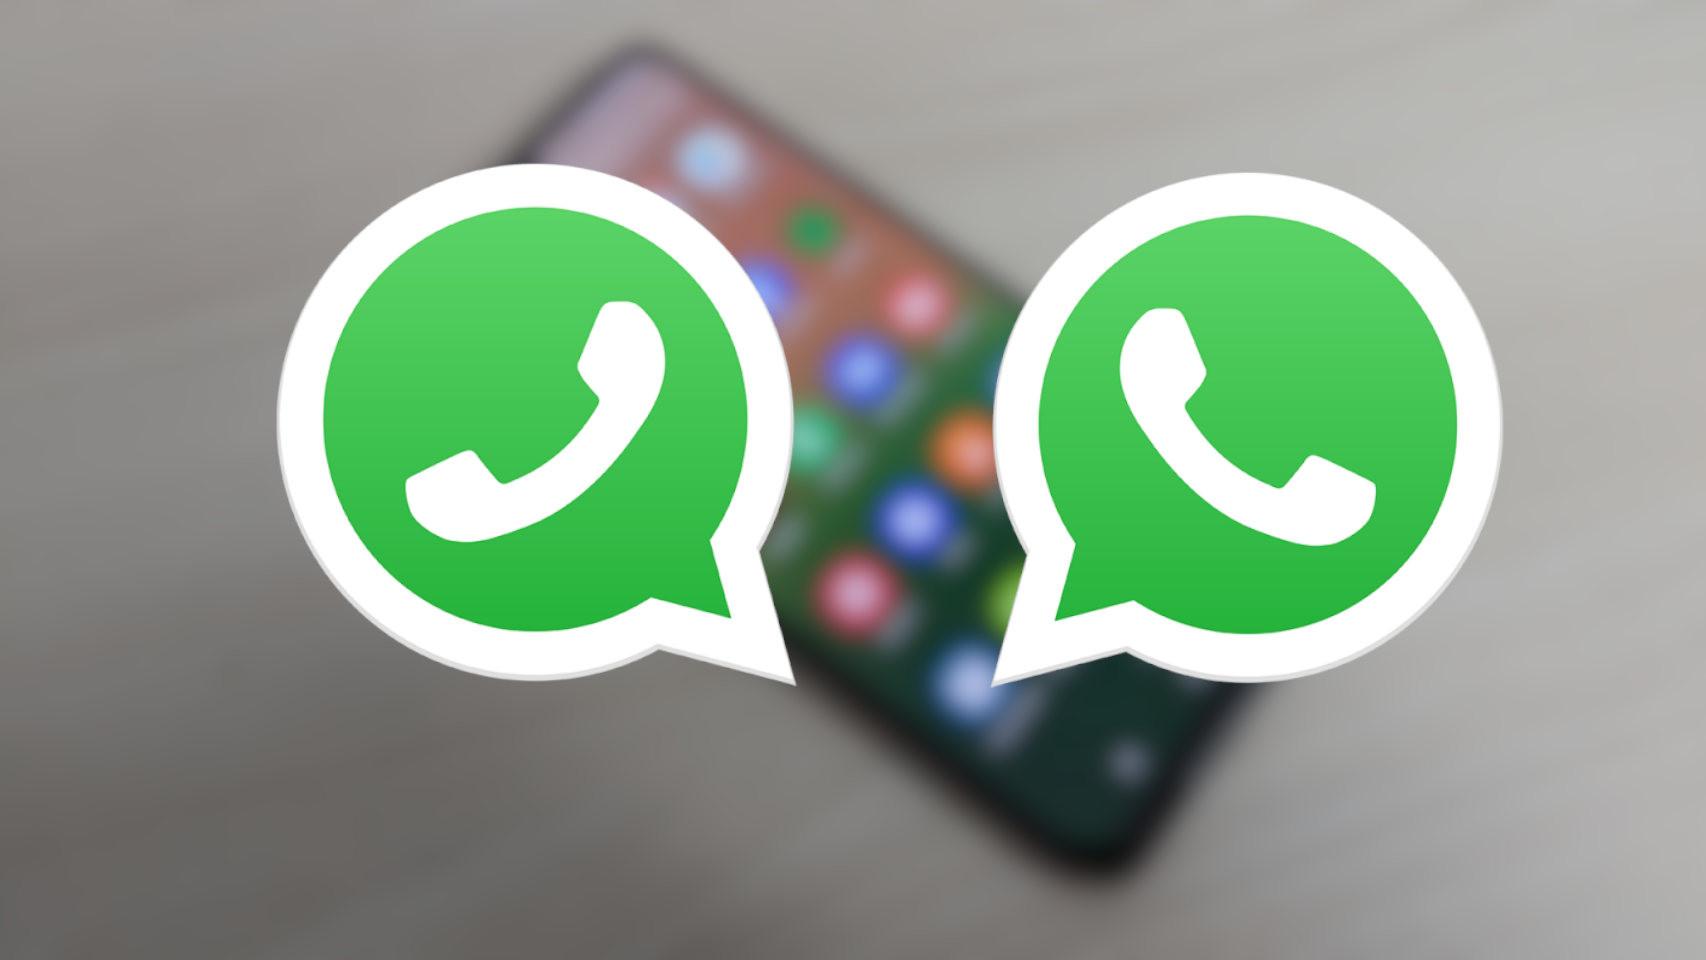 Ya puedes tener WhatsApp en dos teléfonos móviles diferentes con la última  actualización